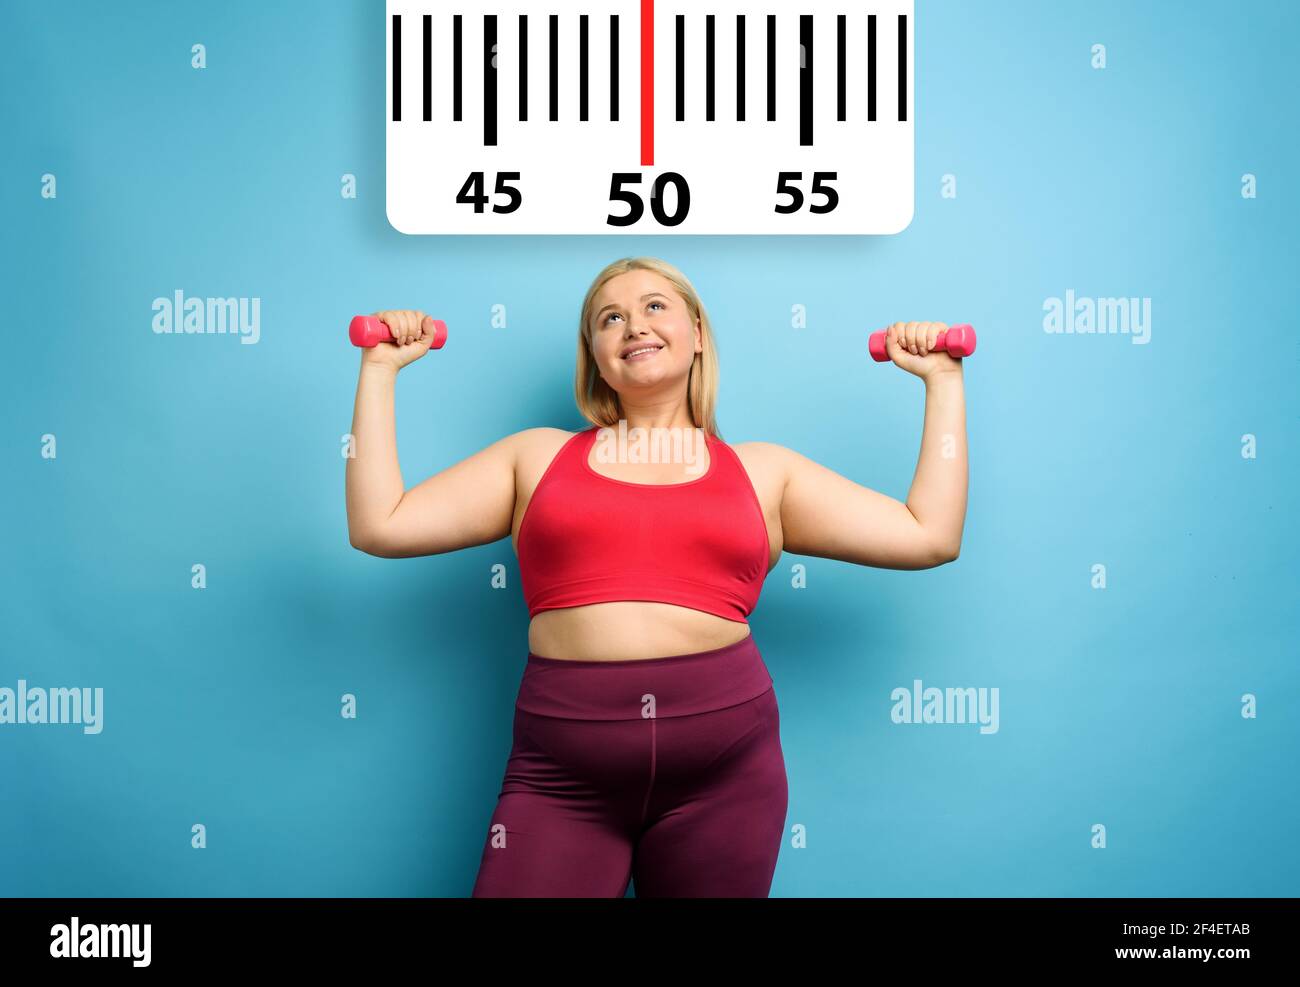 Fat Mädchen tut Fitness-Studio zu Hause mit zufriedenen Ausdruck, weil sie ihr Gewicht zu verringern. Cyanfarbener Hintergrund Stockfoto